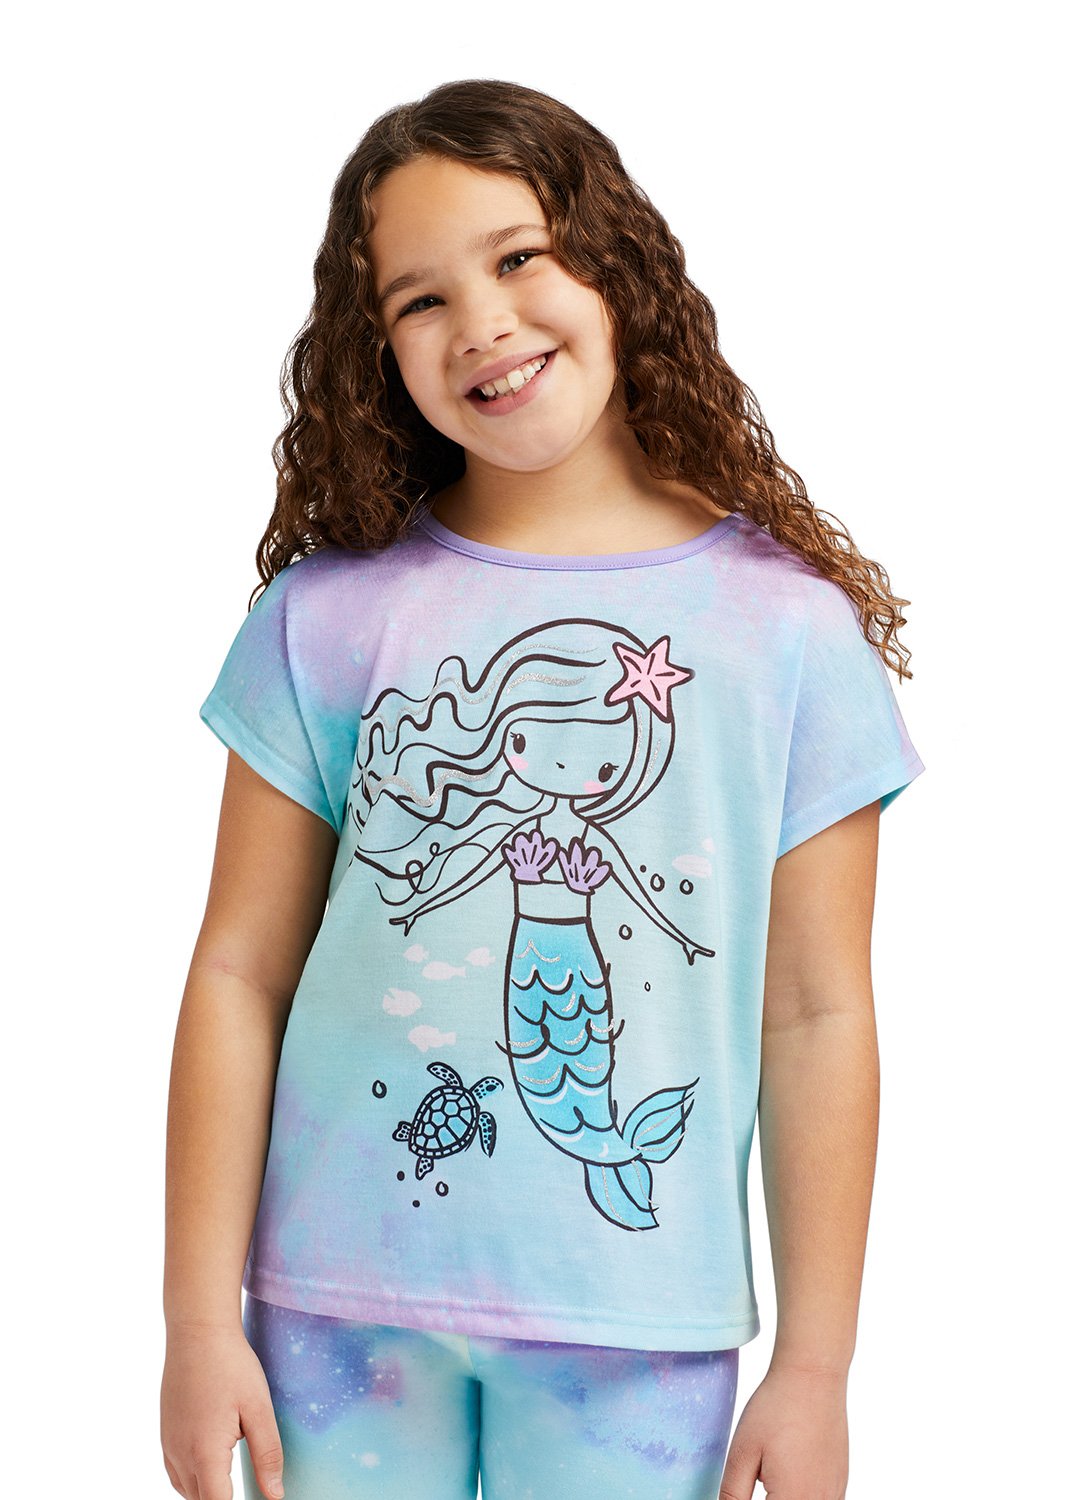 Girl smiling & wearing Aqua Mermaid Top, Jogger Pants